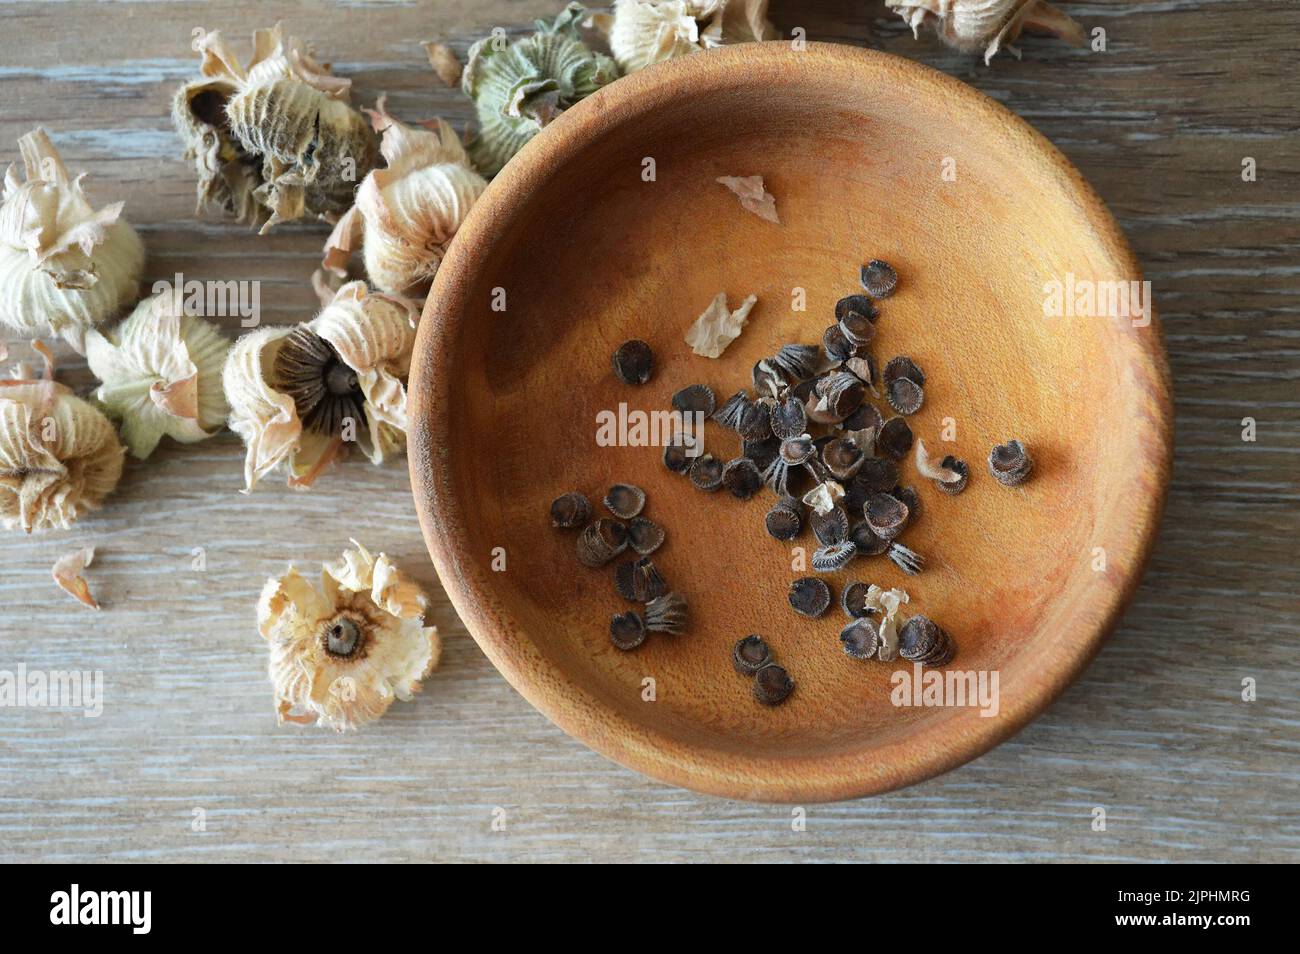 Sammeln von Hollyhock-Blumensamen aus getrockneten Samenschoten. Draufsicht auf Hollyhock-Samen in Holzschüssel Stockfoto